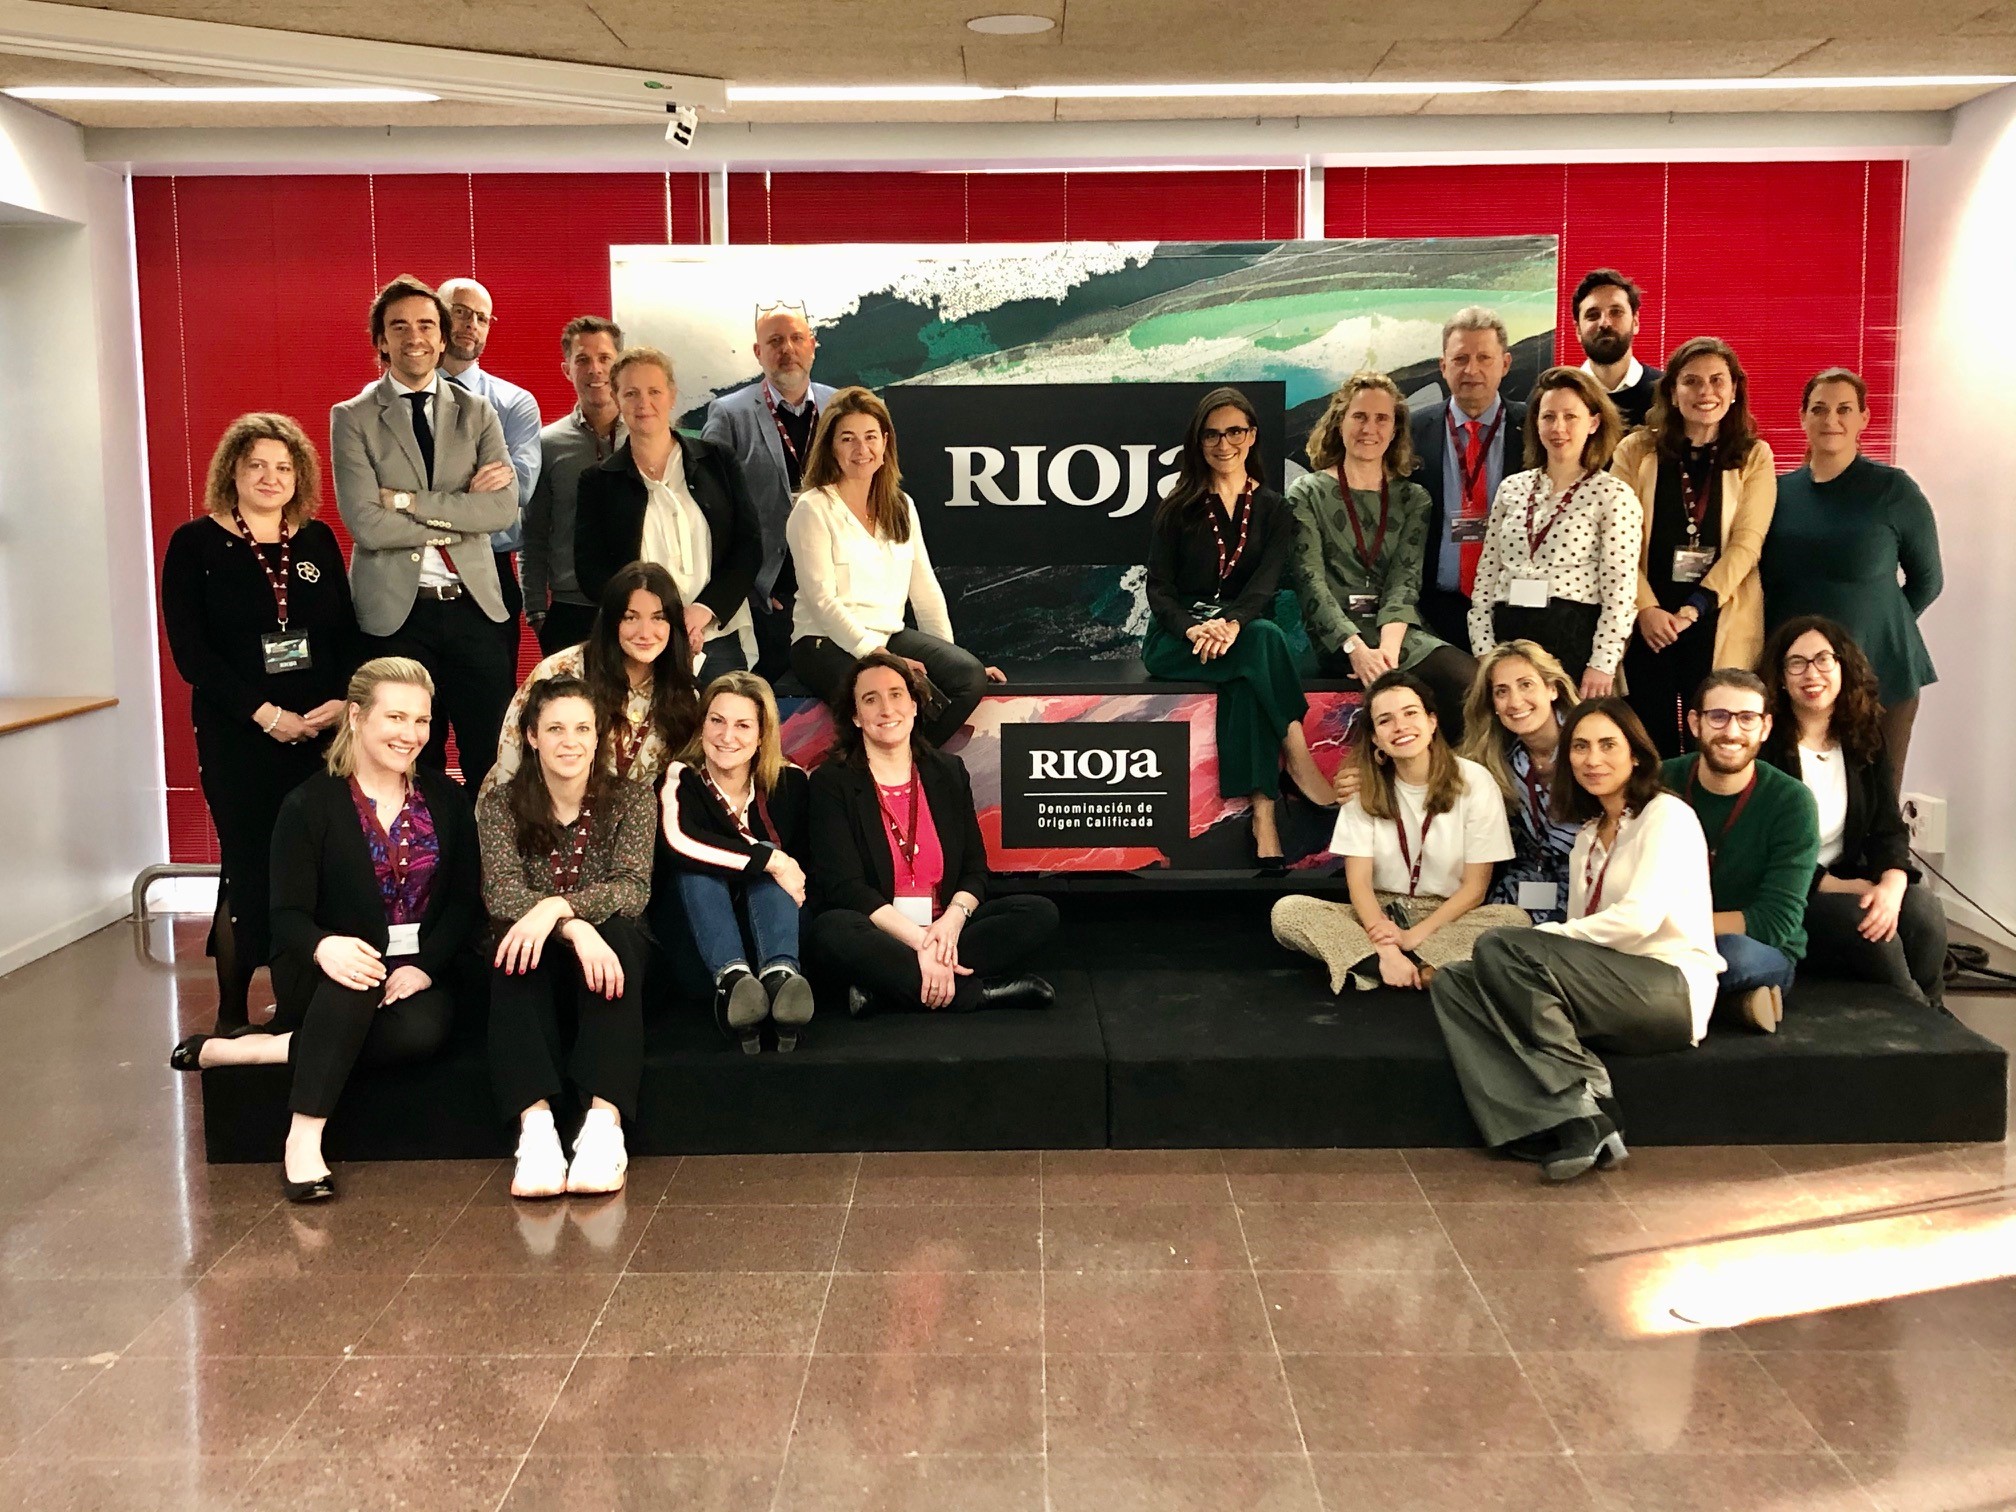 Puesta en común de la promoción internacional de Rioja